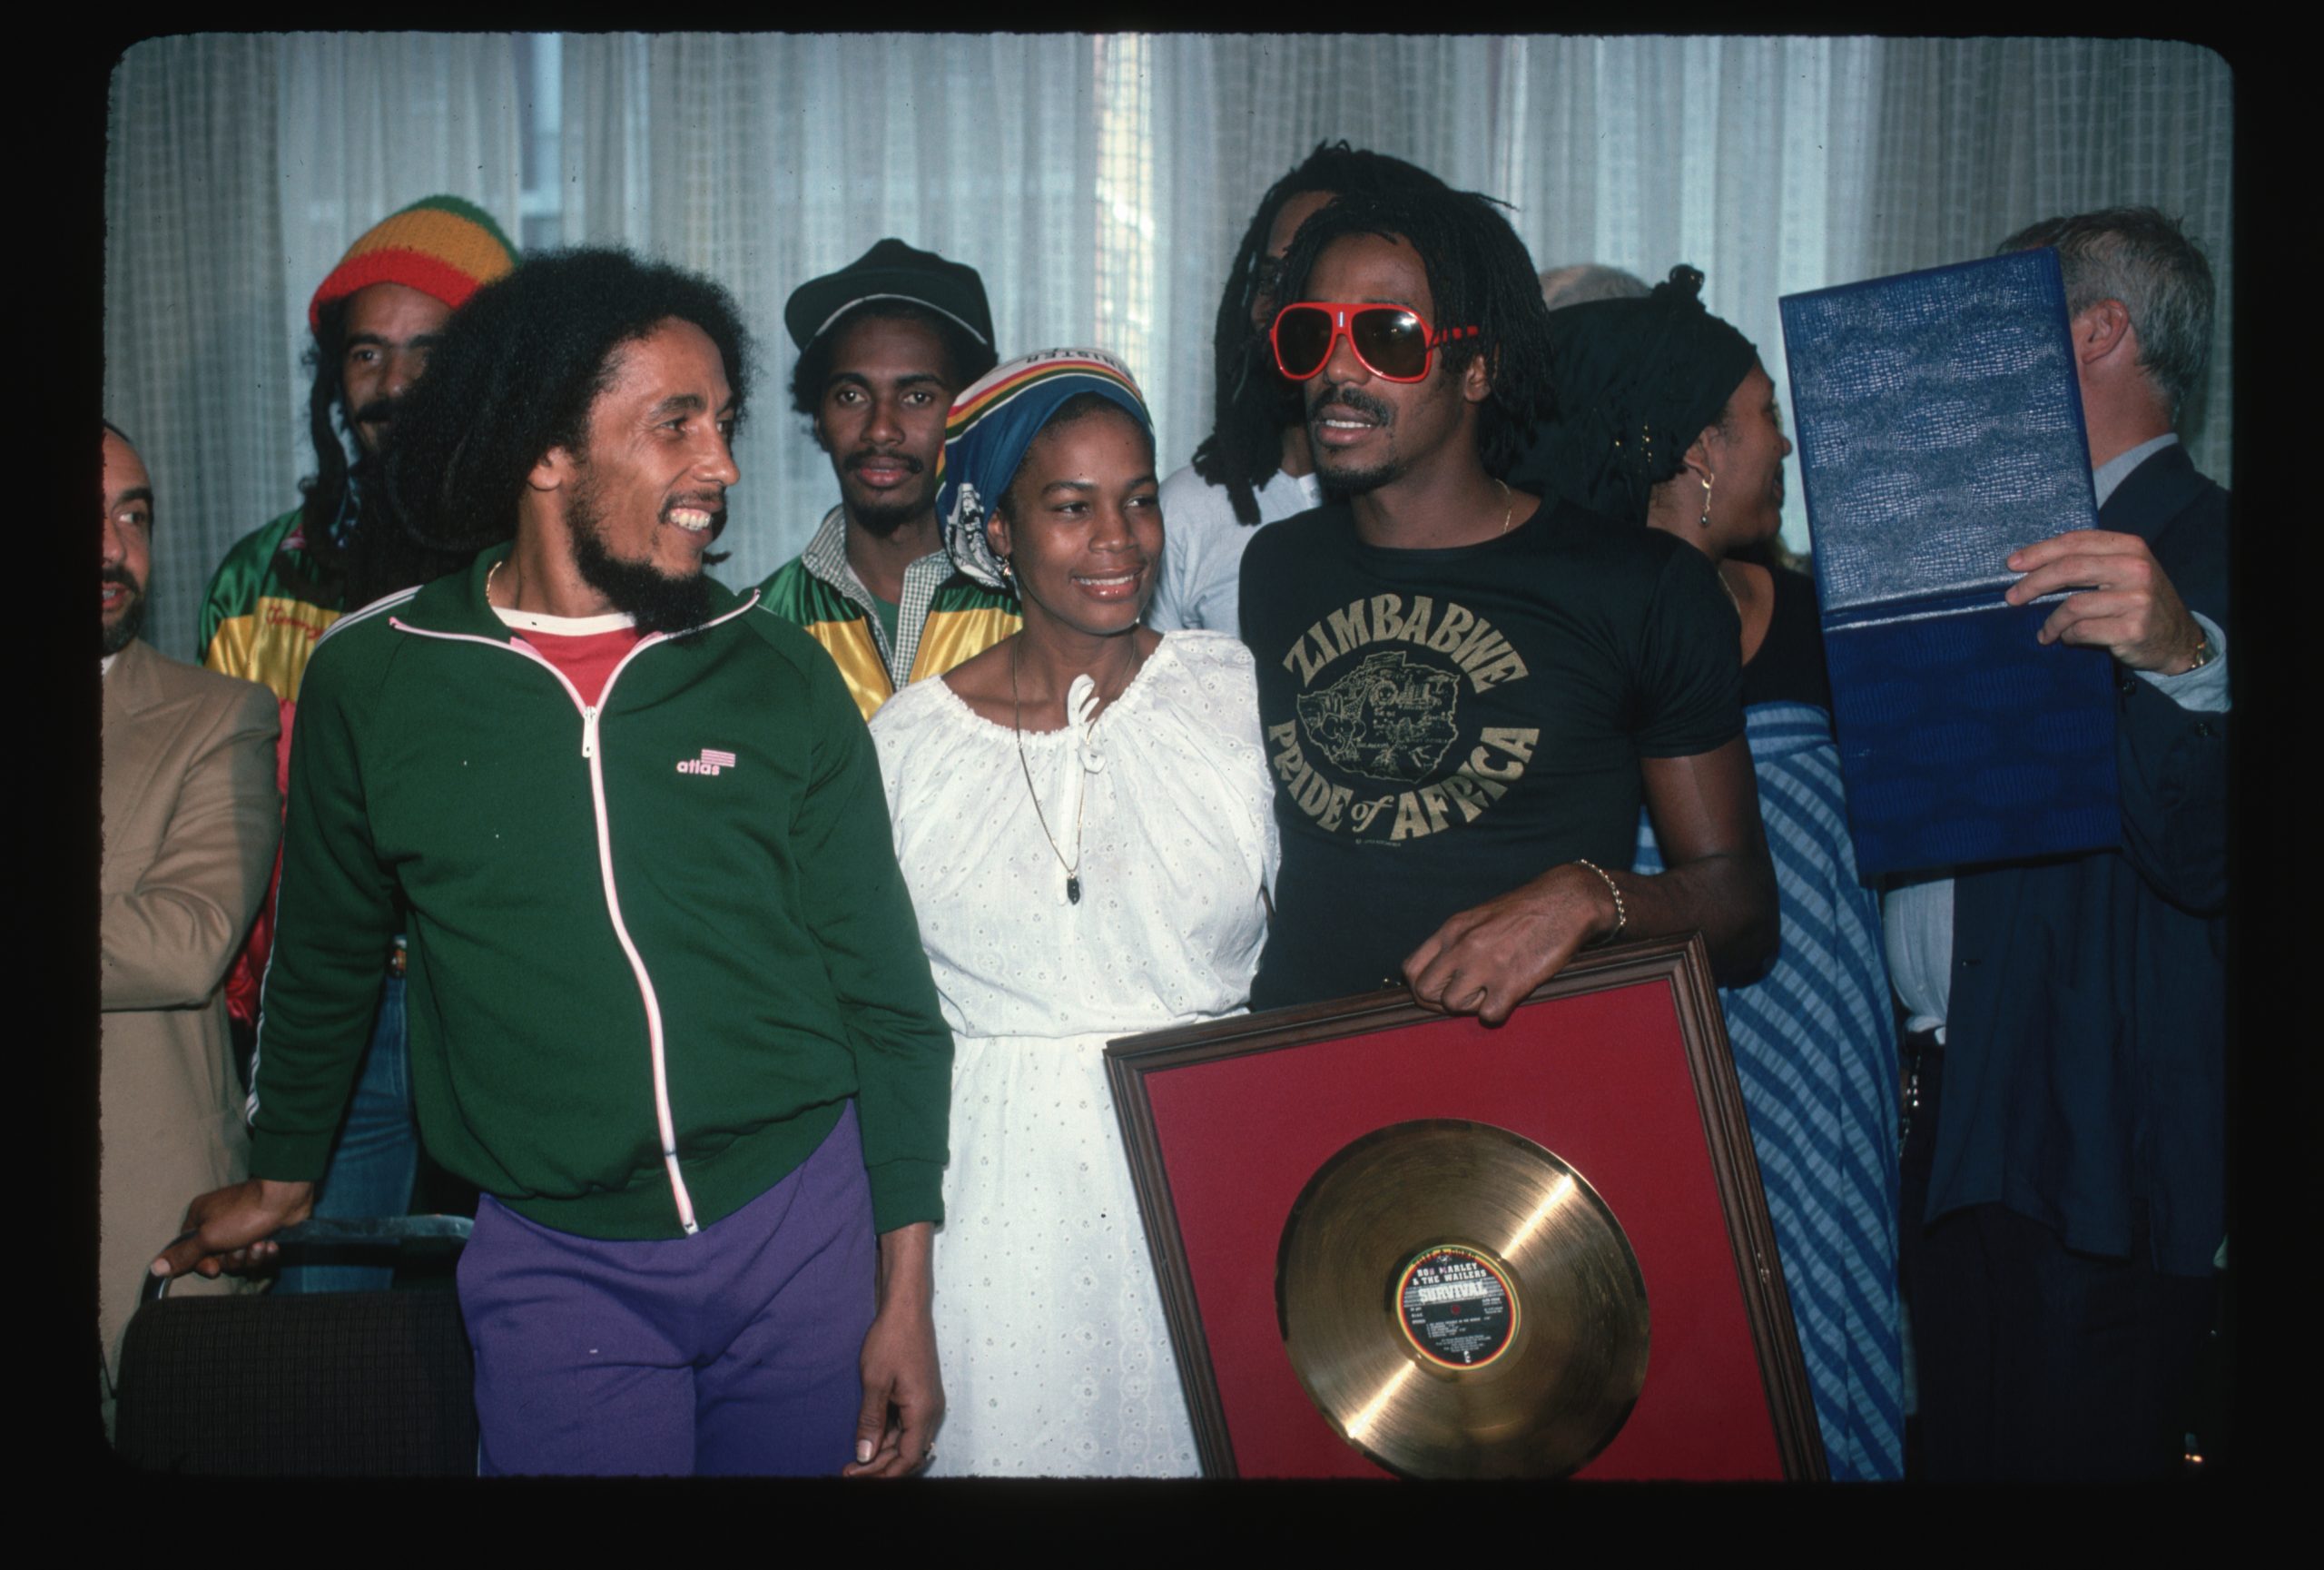 Bunny se enfocó más en su fe. Se identificó con el movimiento rastafari, como los otros Wailers. Después de haber fallado en la producción de discos por su propia cuenta, coprodujo una cantidad de sus grabaciones.  Escribió gran parte de su material y regrabó muchos cortes del repertorio de los Wailers. Bunny trabajó en principio en el estilo Roots reggae, transmitiendo usualmente sus mensajes políticos y espirituales.  También le fue bien grabando en el más popular y típicamente apolítico estilo Dancehall. Bunny Wailer ganó el premio Grammy al mejor álbum de Reggae en 1990, 1994 y 1996